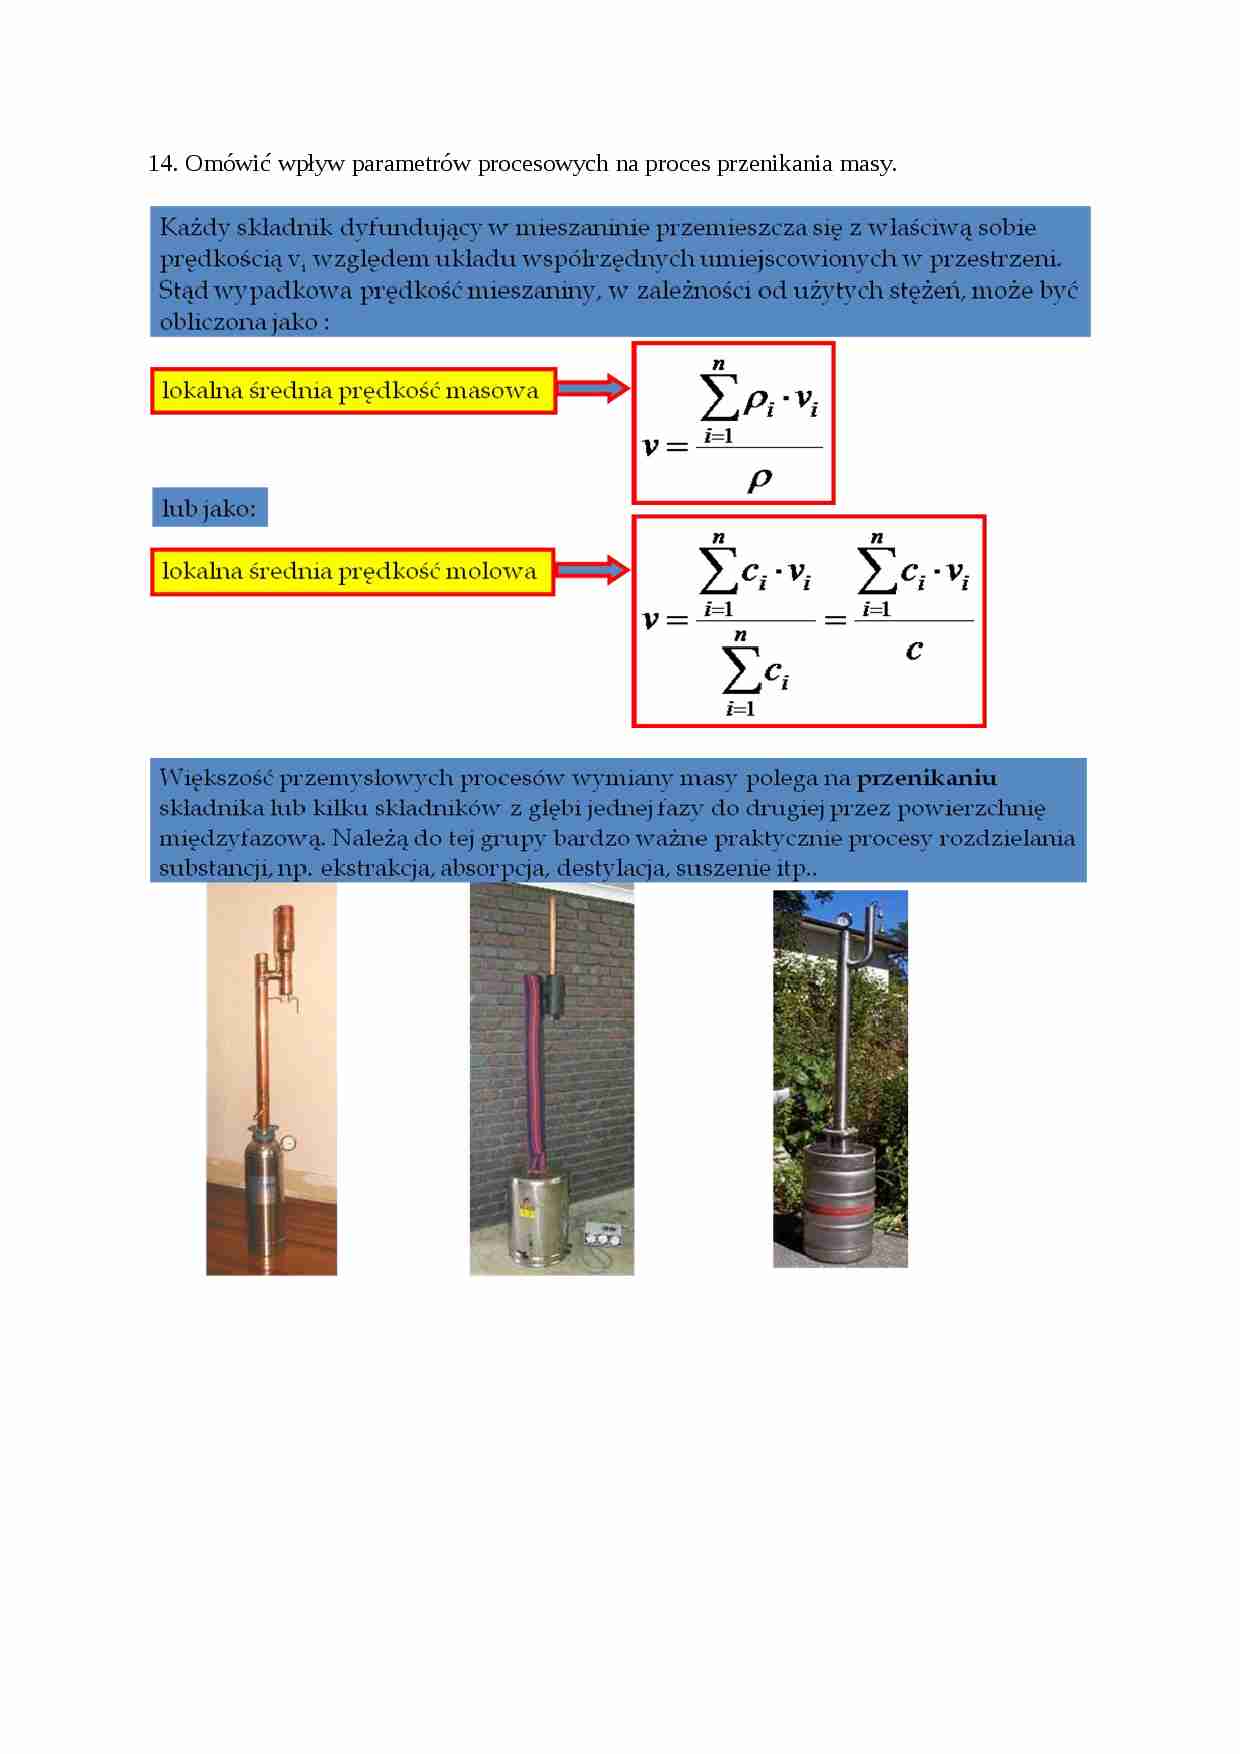 Inżynieria chemiczna - ćwiczenia - Proces przenikania masy - strona 1